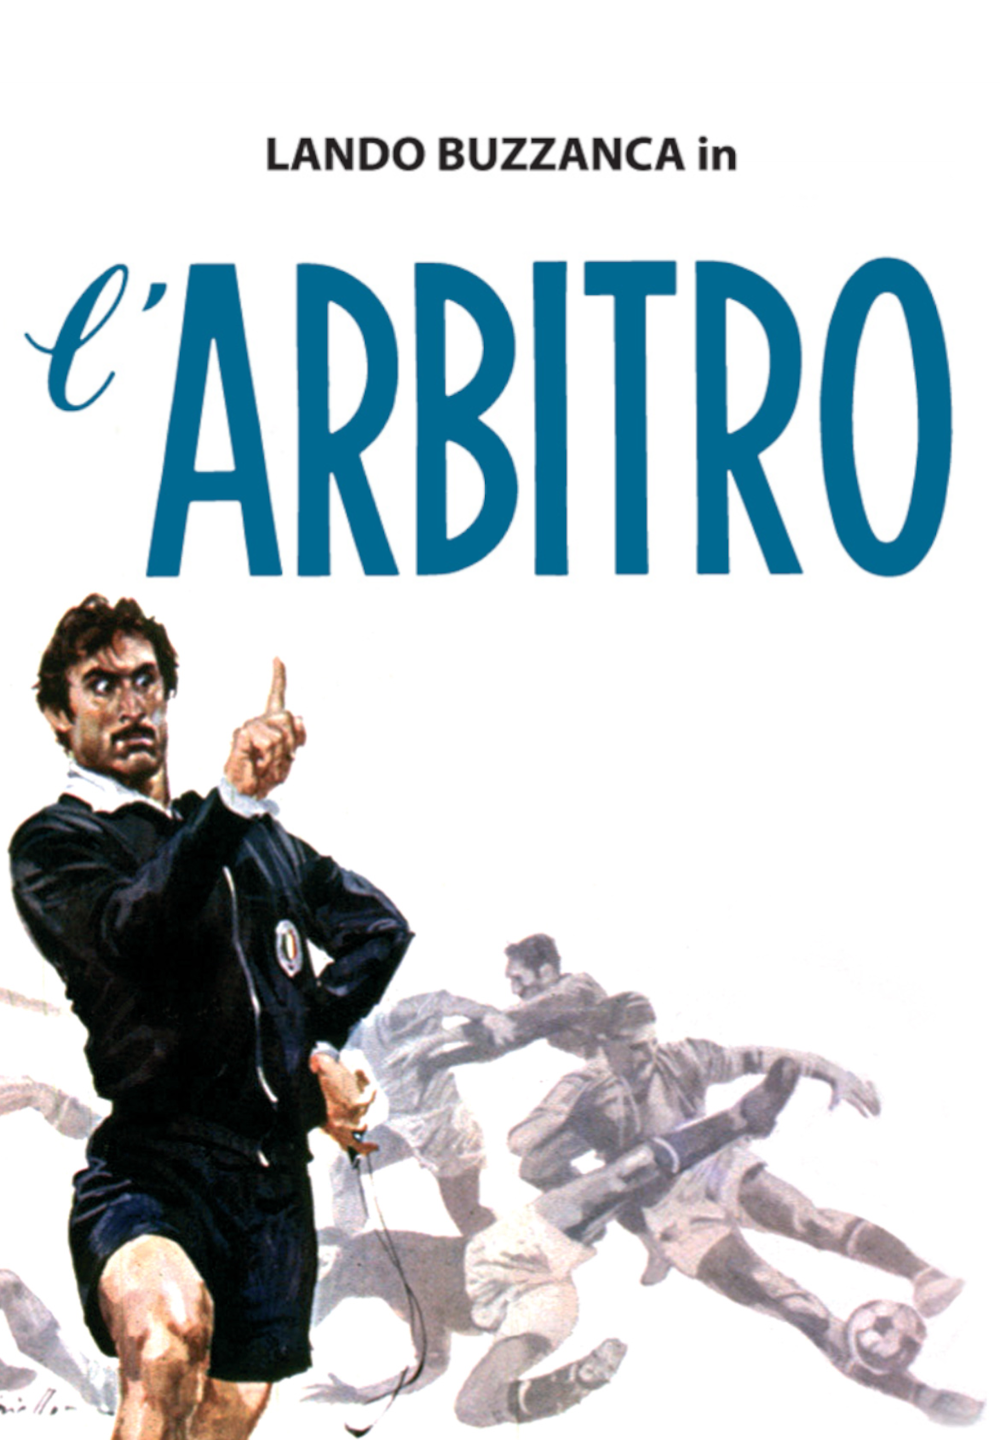 L’arbitro (1974)